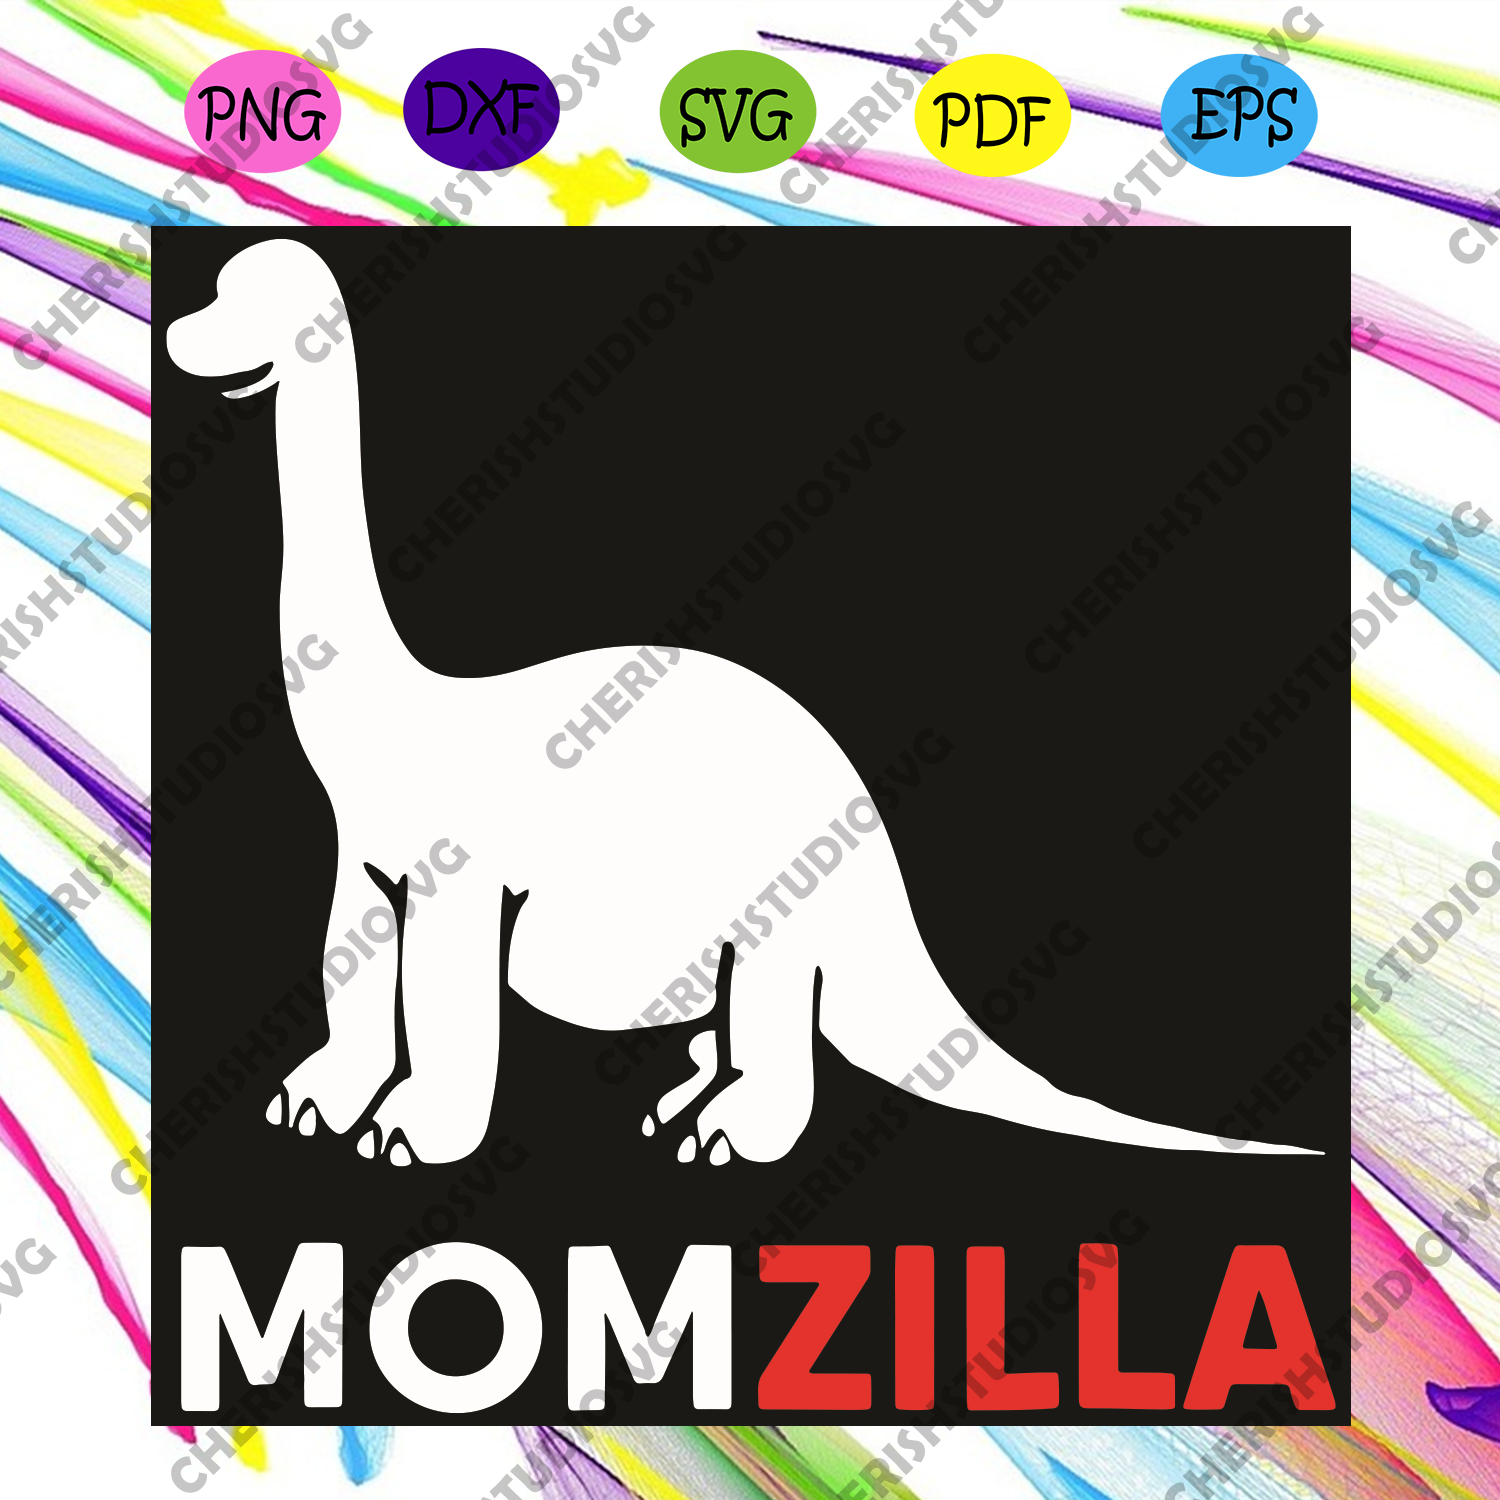 Download Momzilla Svg Mothers Day Svg Dinosaur Svg Dinosaur Mom Svg Momzill Cherishsvgstudio